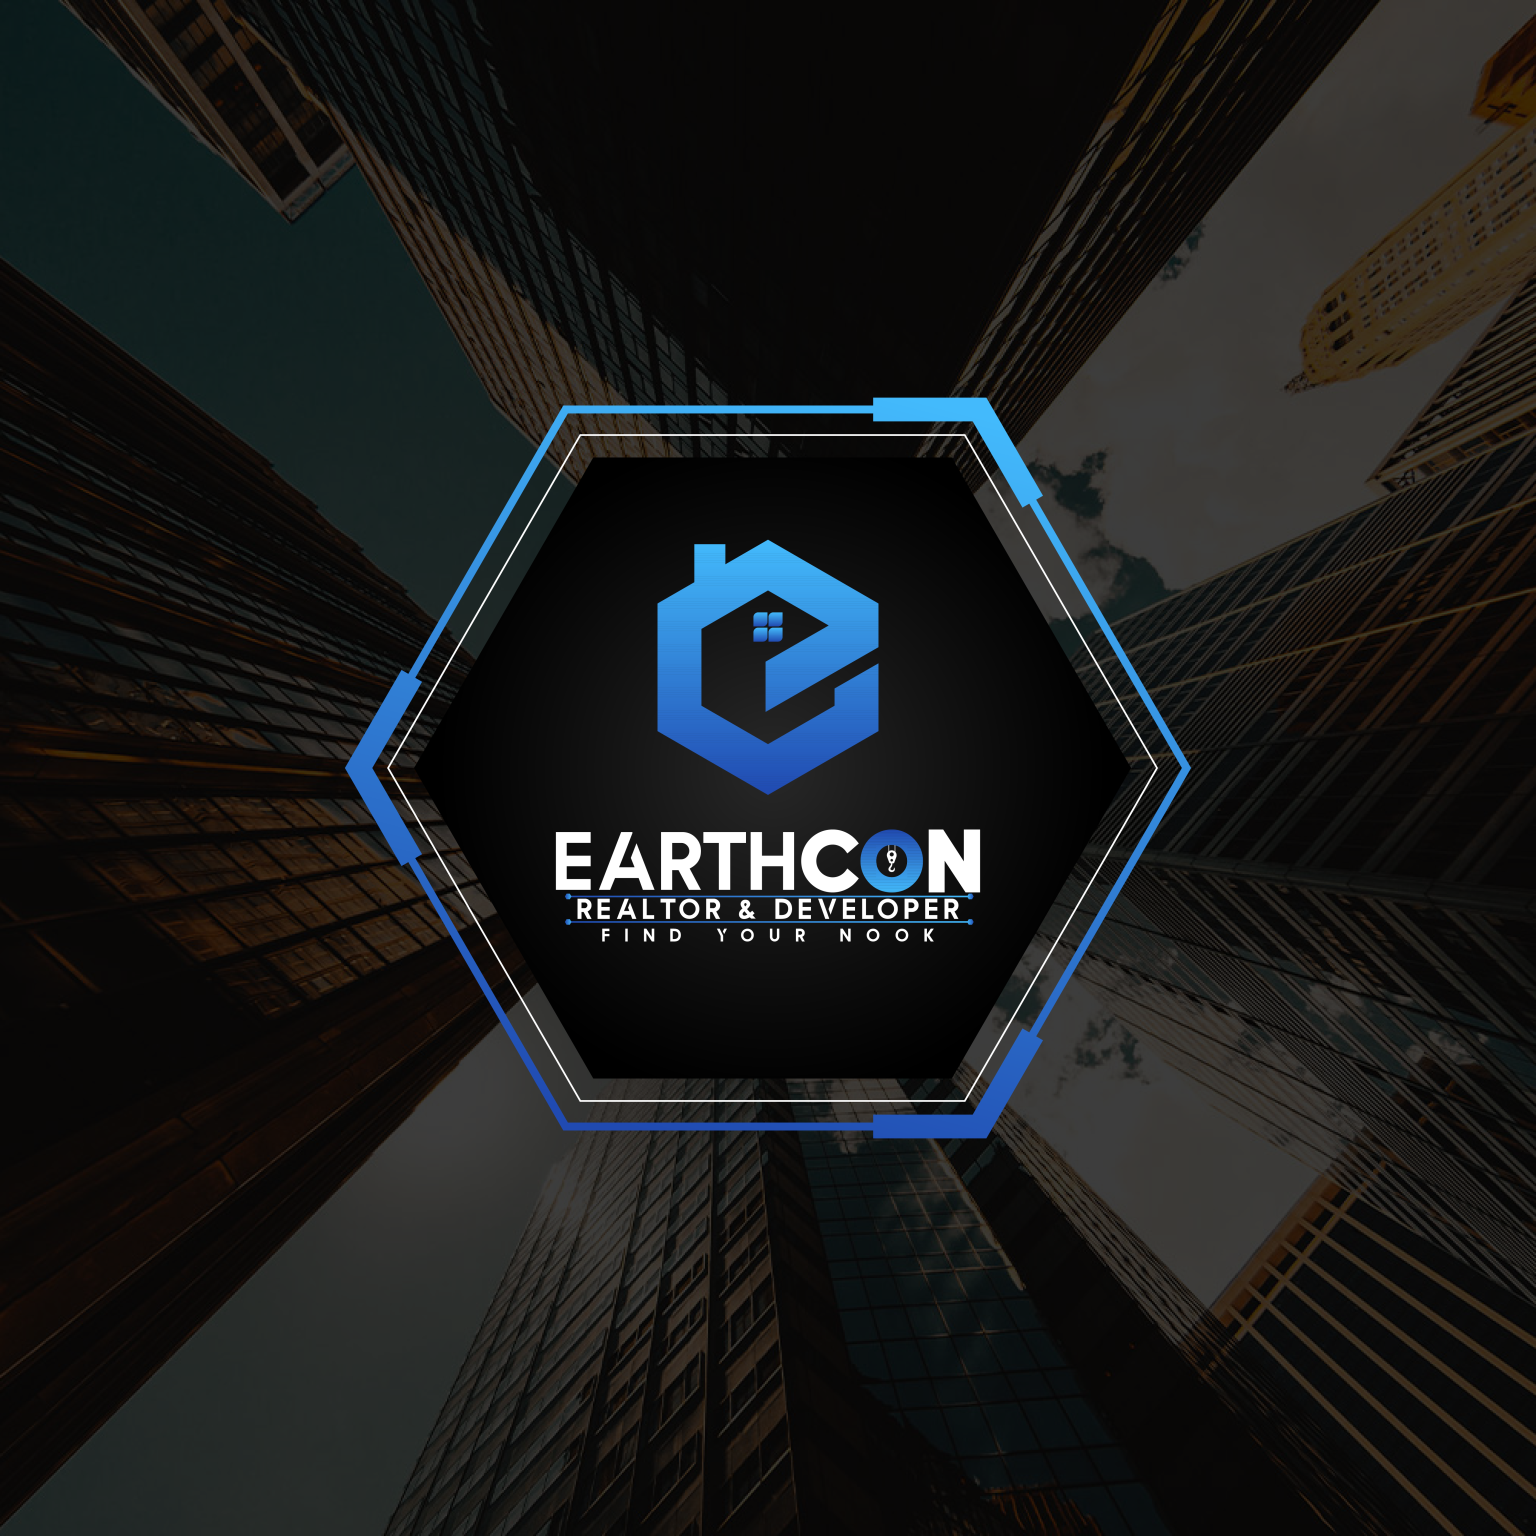 Earthcon